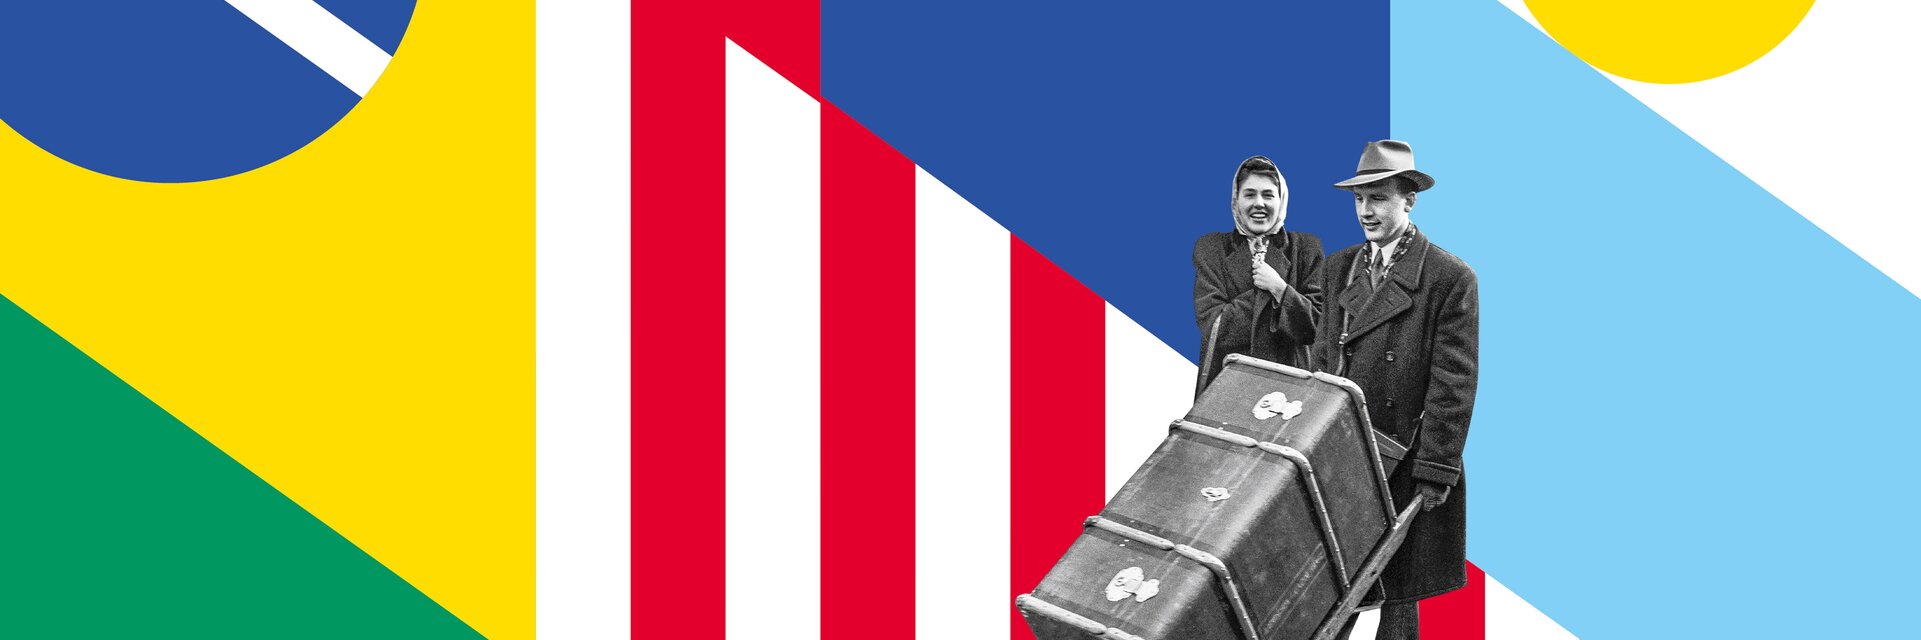 Keyvisual de l'exposition "La Suisse ailleurs" - il montre un couple, l'homme poussant une grande valise d'outre-mer.